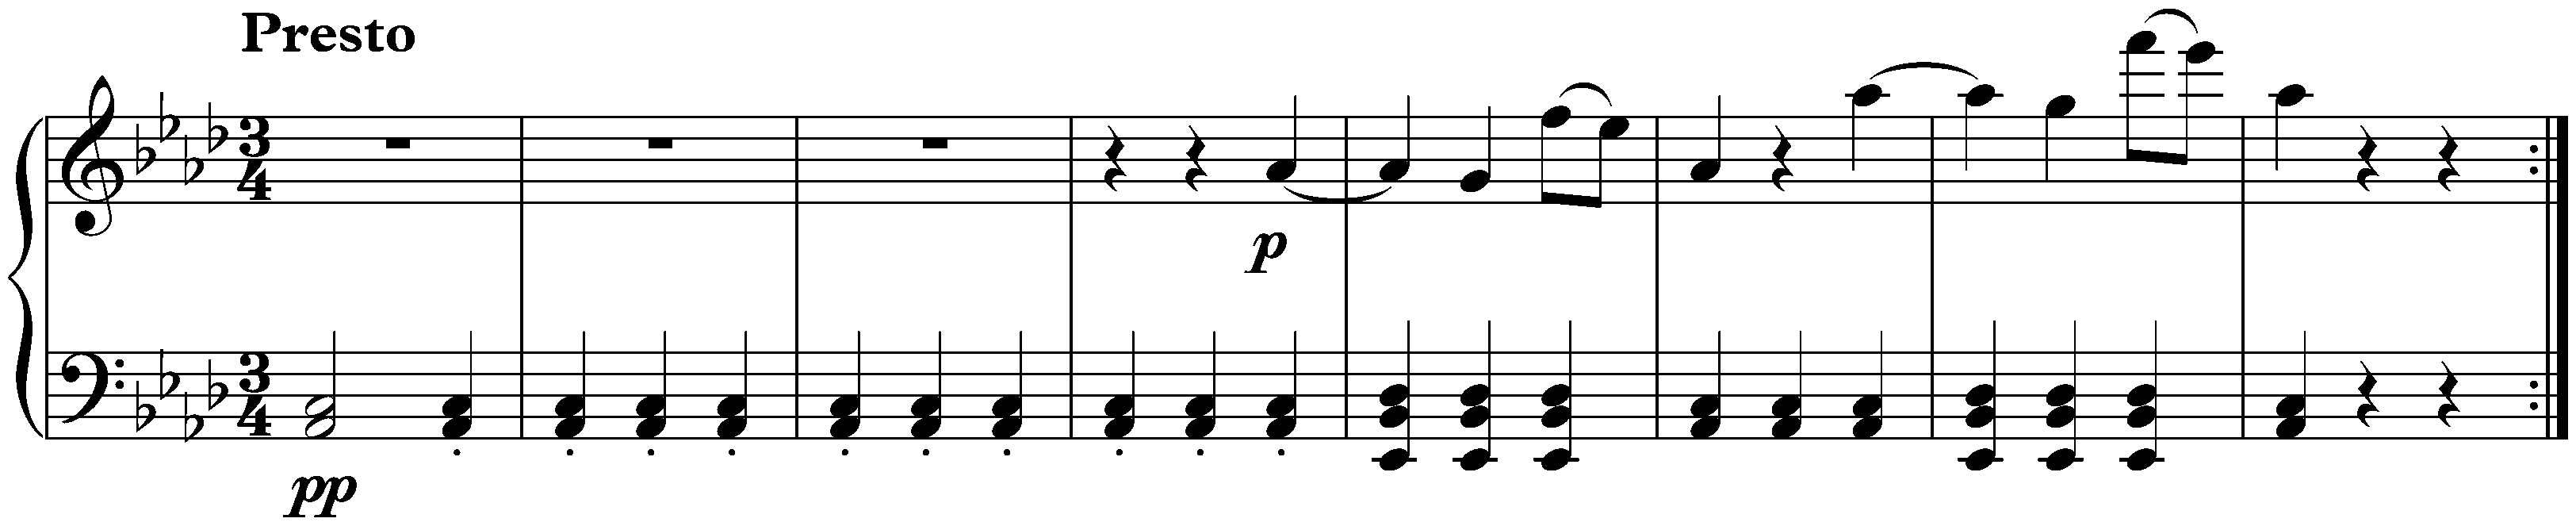 Seven Bagatelles, op. 33; 7. A-flat major